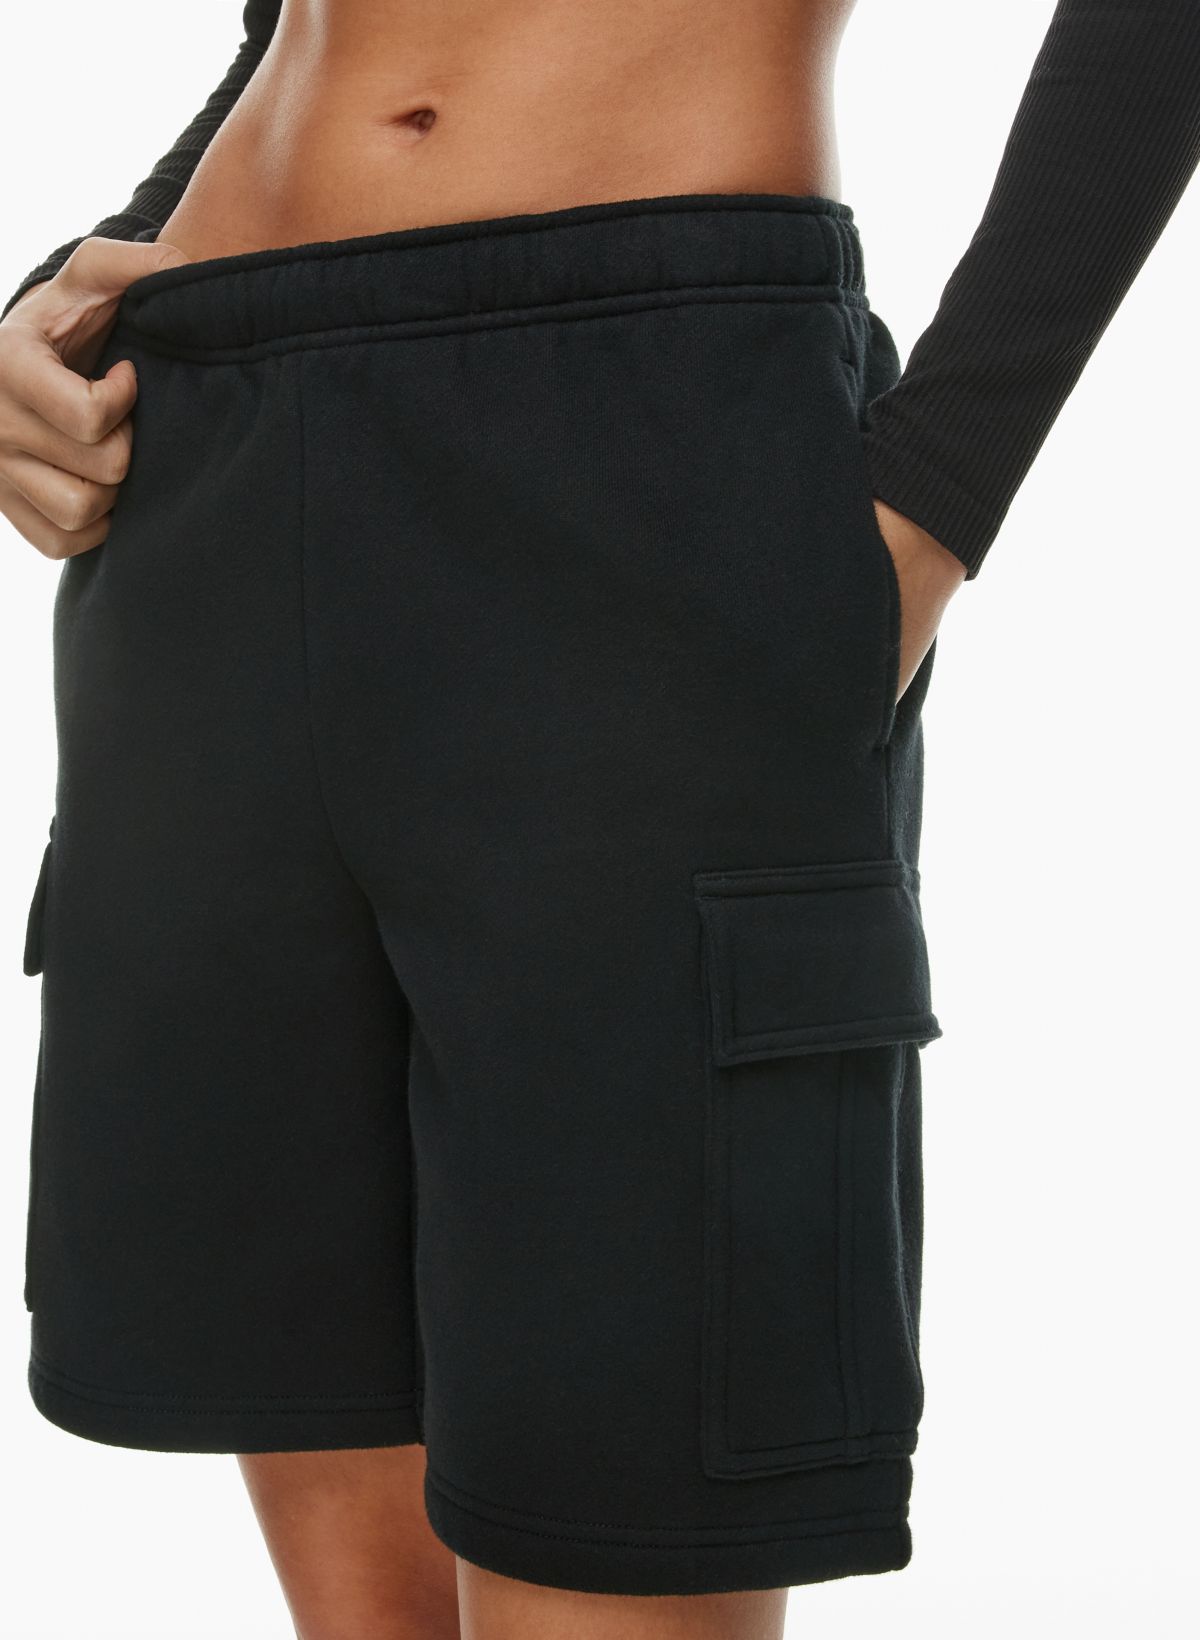 Women's High-Waist Cotton Blend Seamless 7 Inseam Bike Shorts - A New Day™  Black L/XL